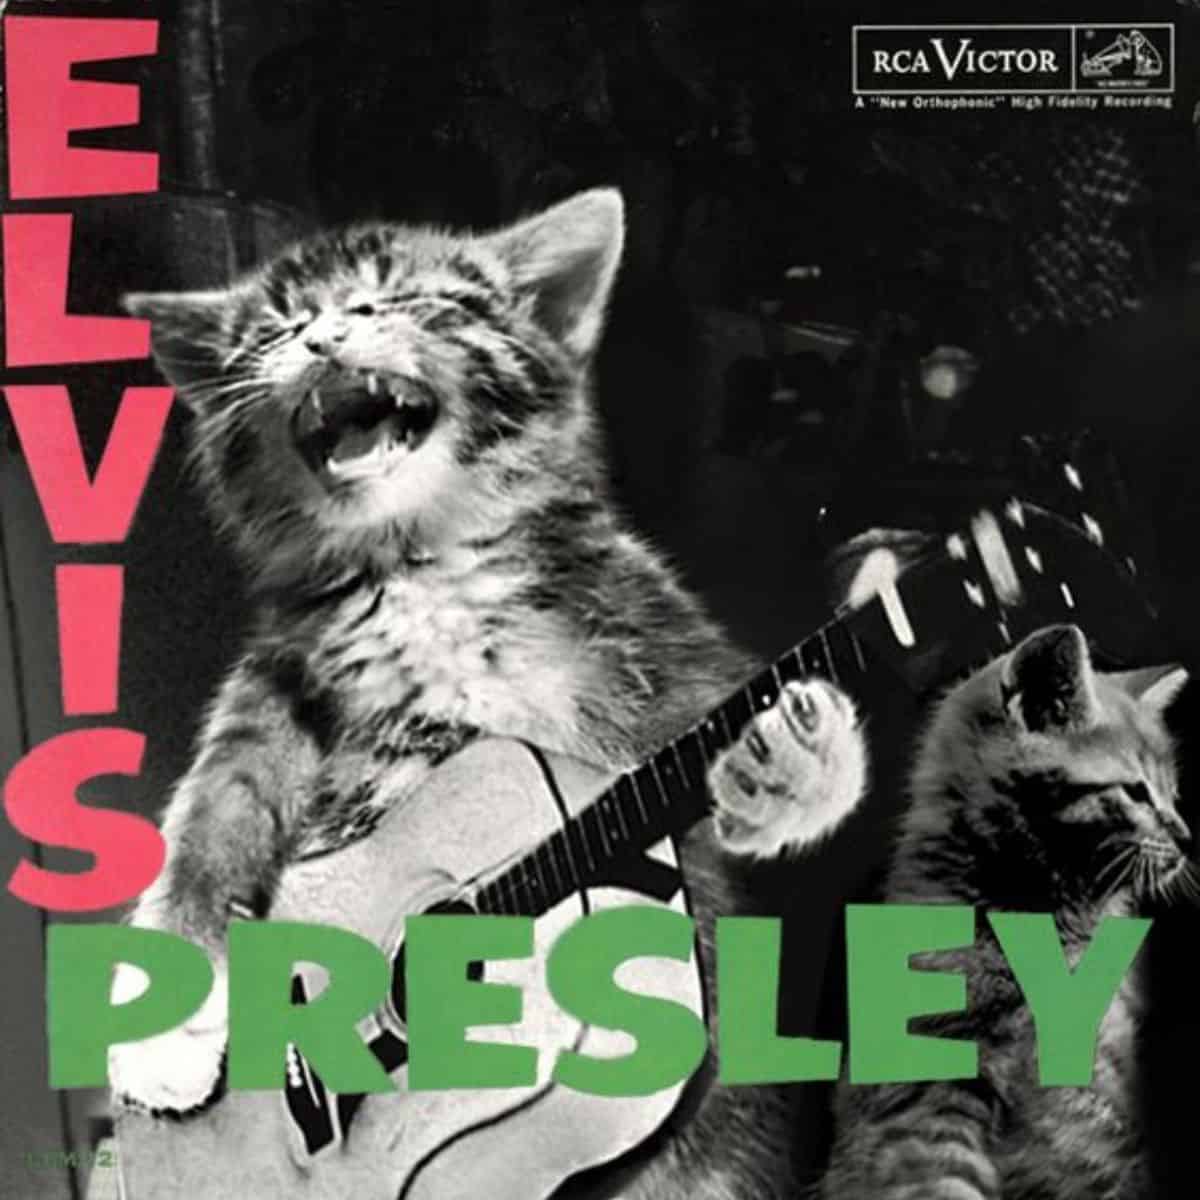 Elvis presley in cat version